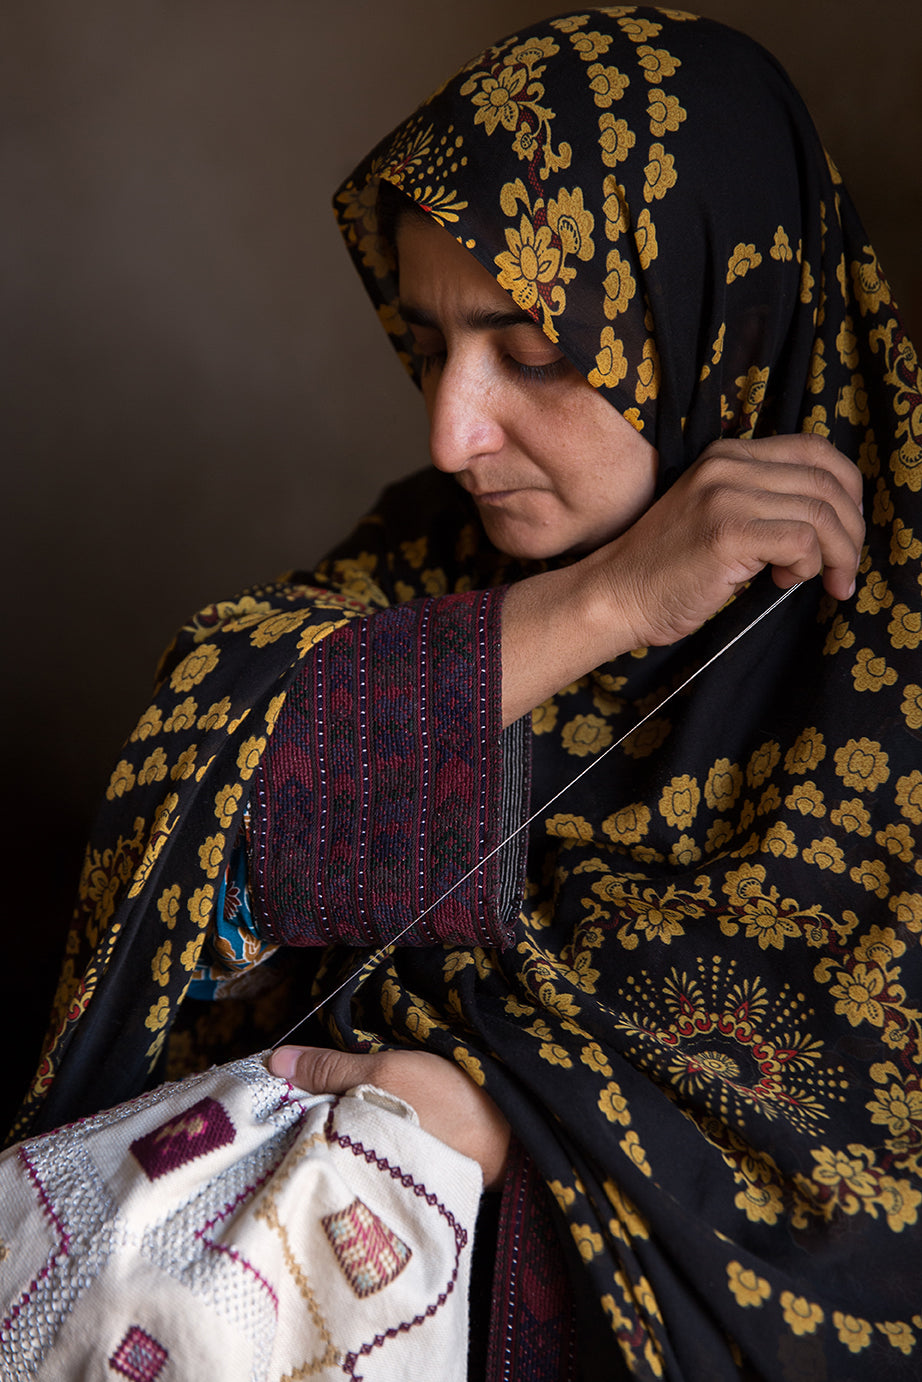 A Baluchi woman embroidering a cushion